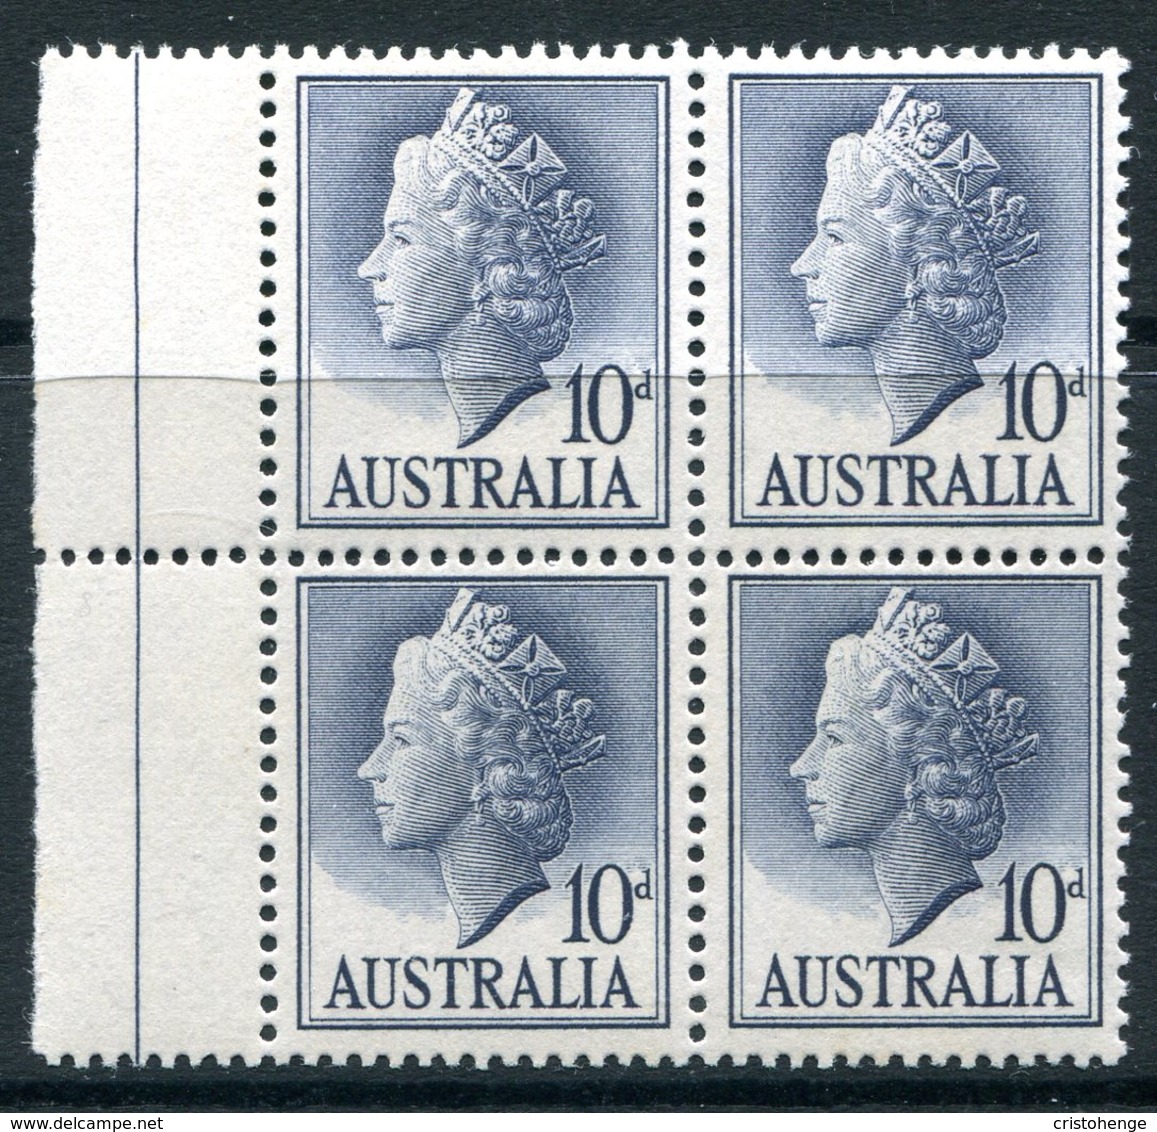 Australia 1955-57 QEII Definitives - 10d Deep Grey-blue Block LHM (SG 282c) - Mint Stamps